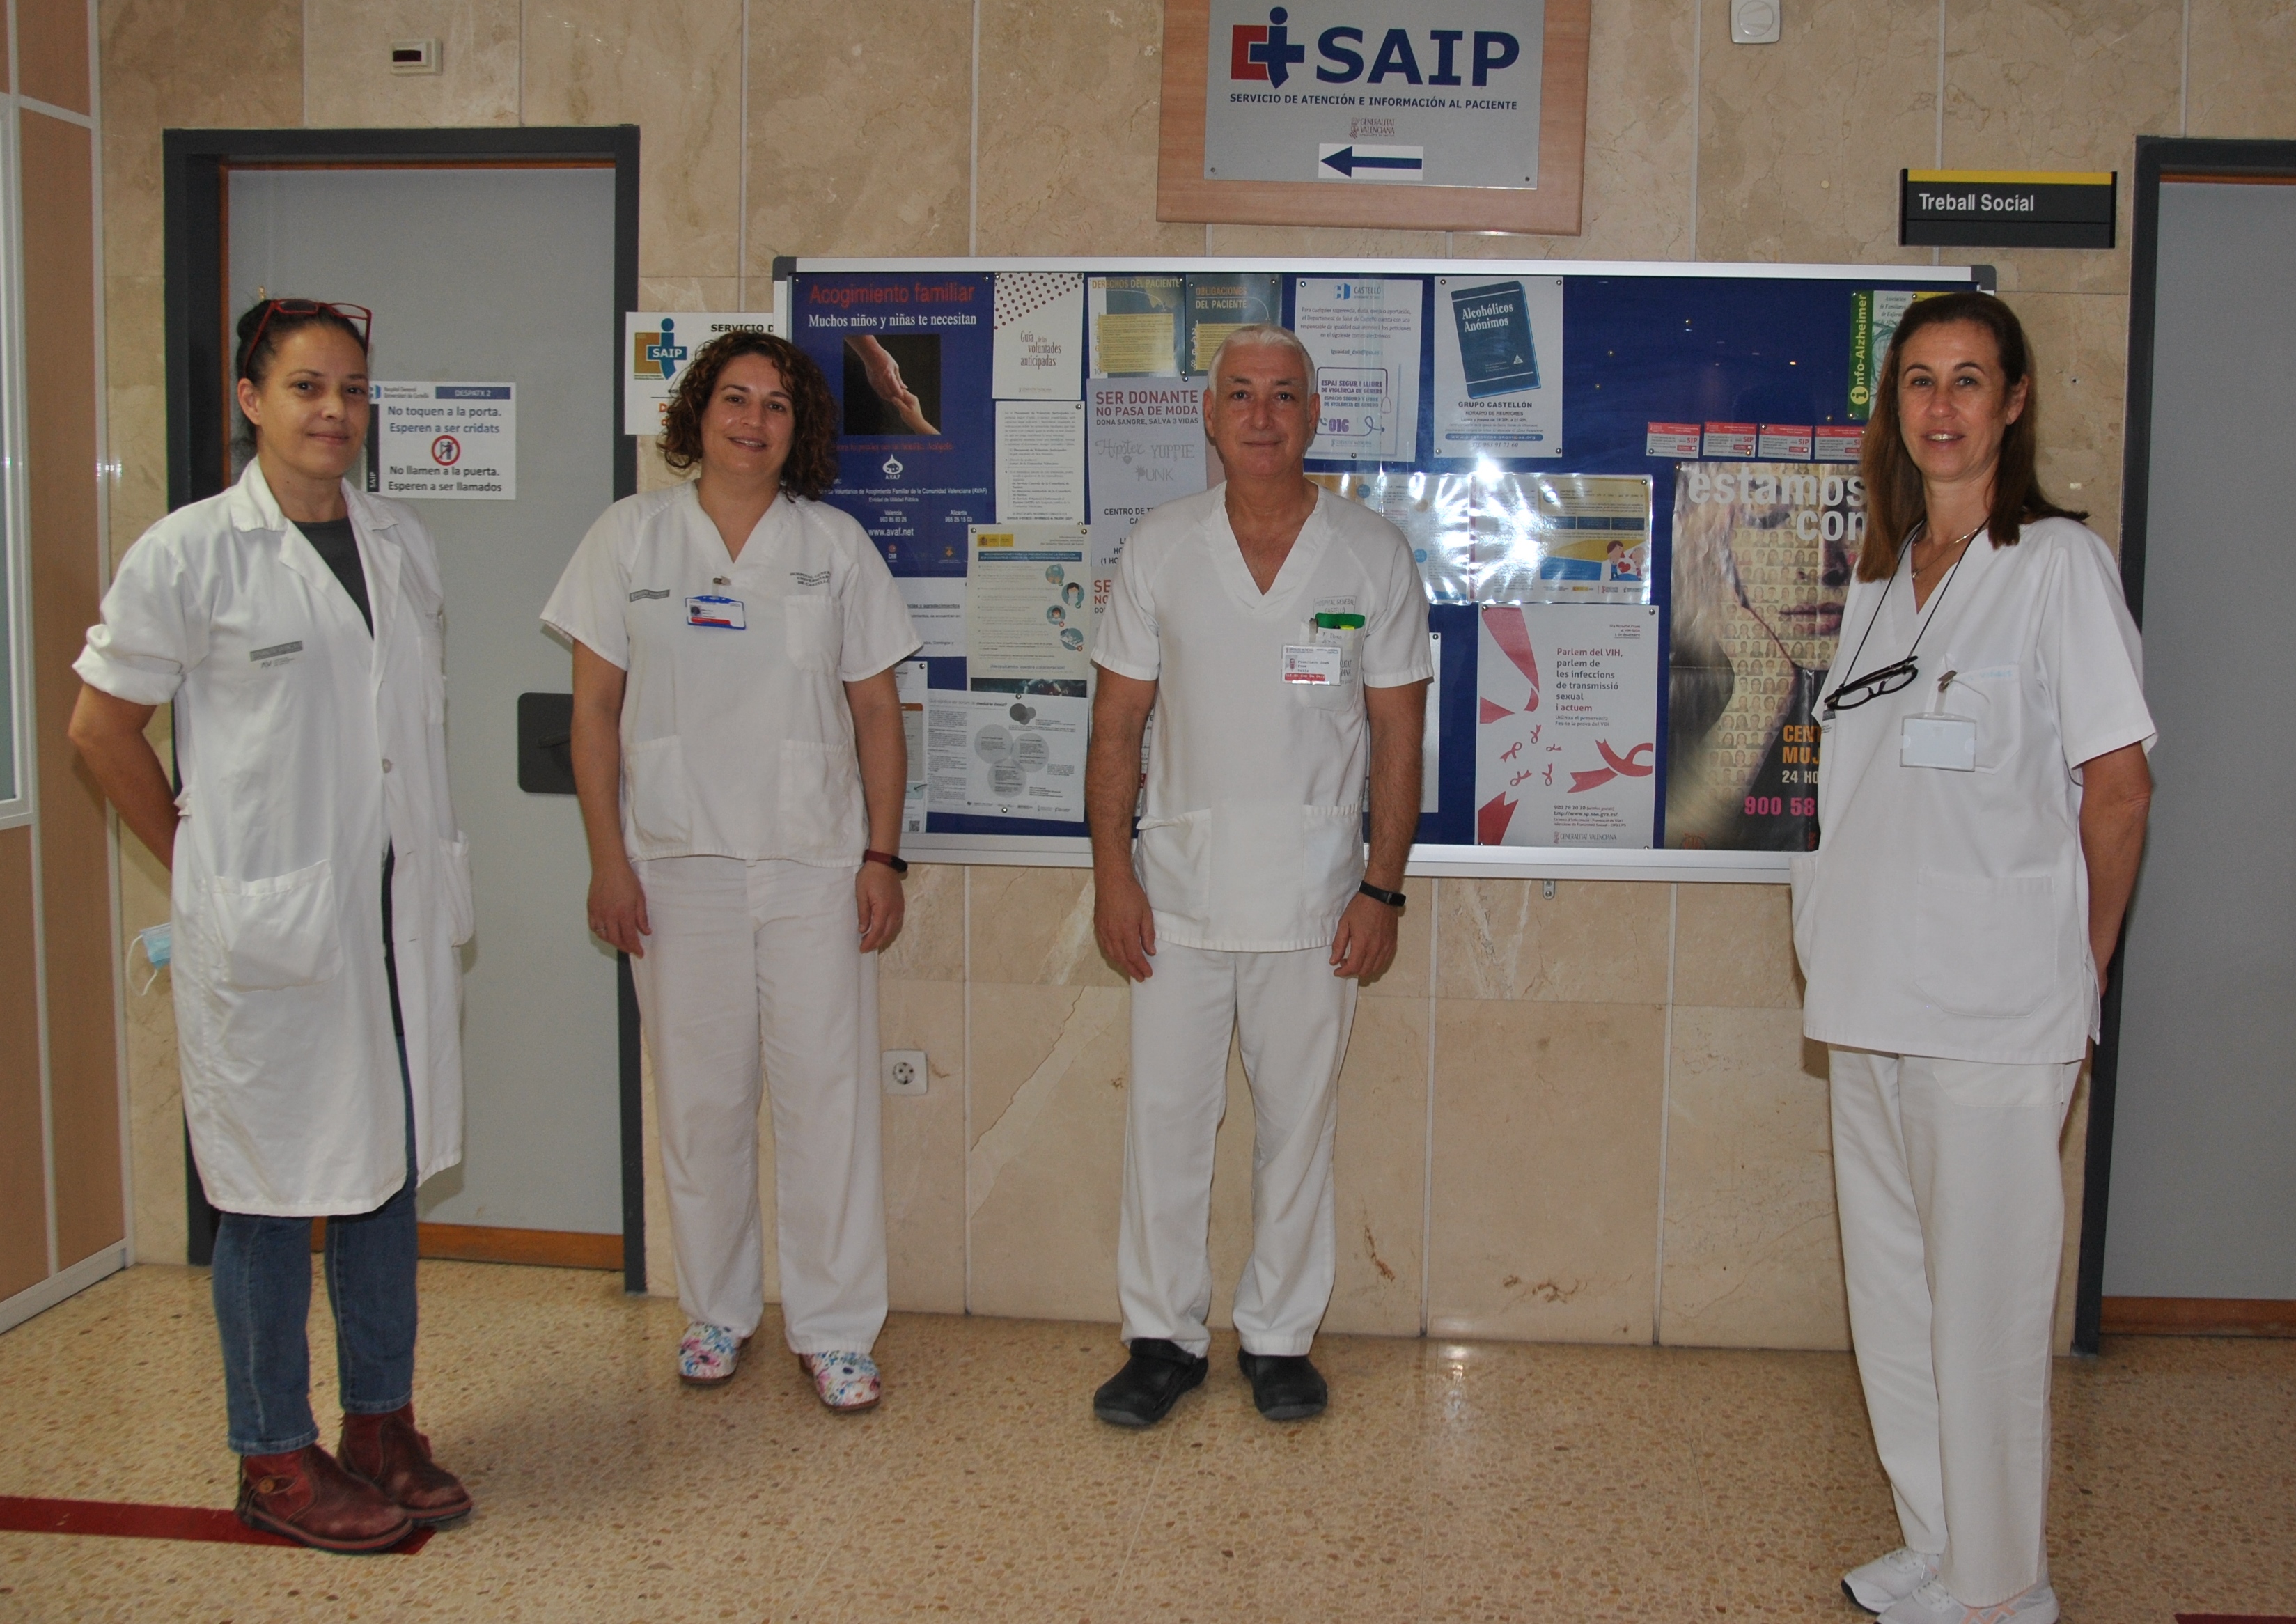 En la imagen se ven a cuatro profesionales santarios responsables del Servicio de Atención e Información al Paciente del Hospital General Unviersitario de Castellón 